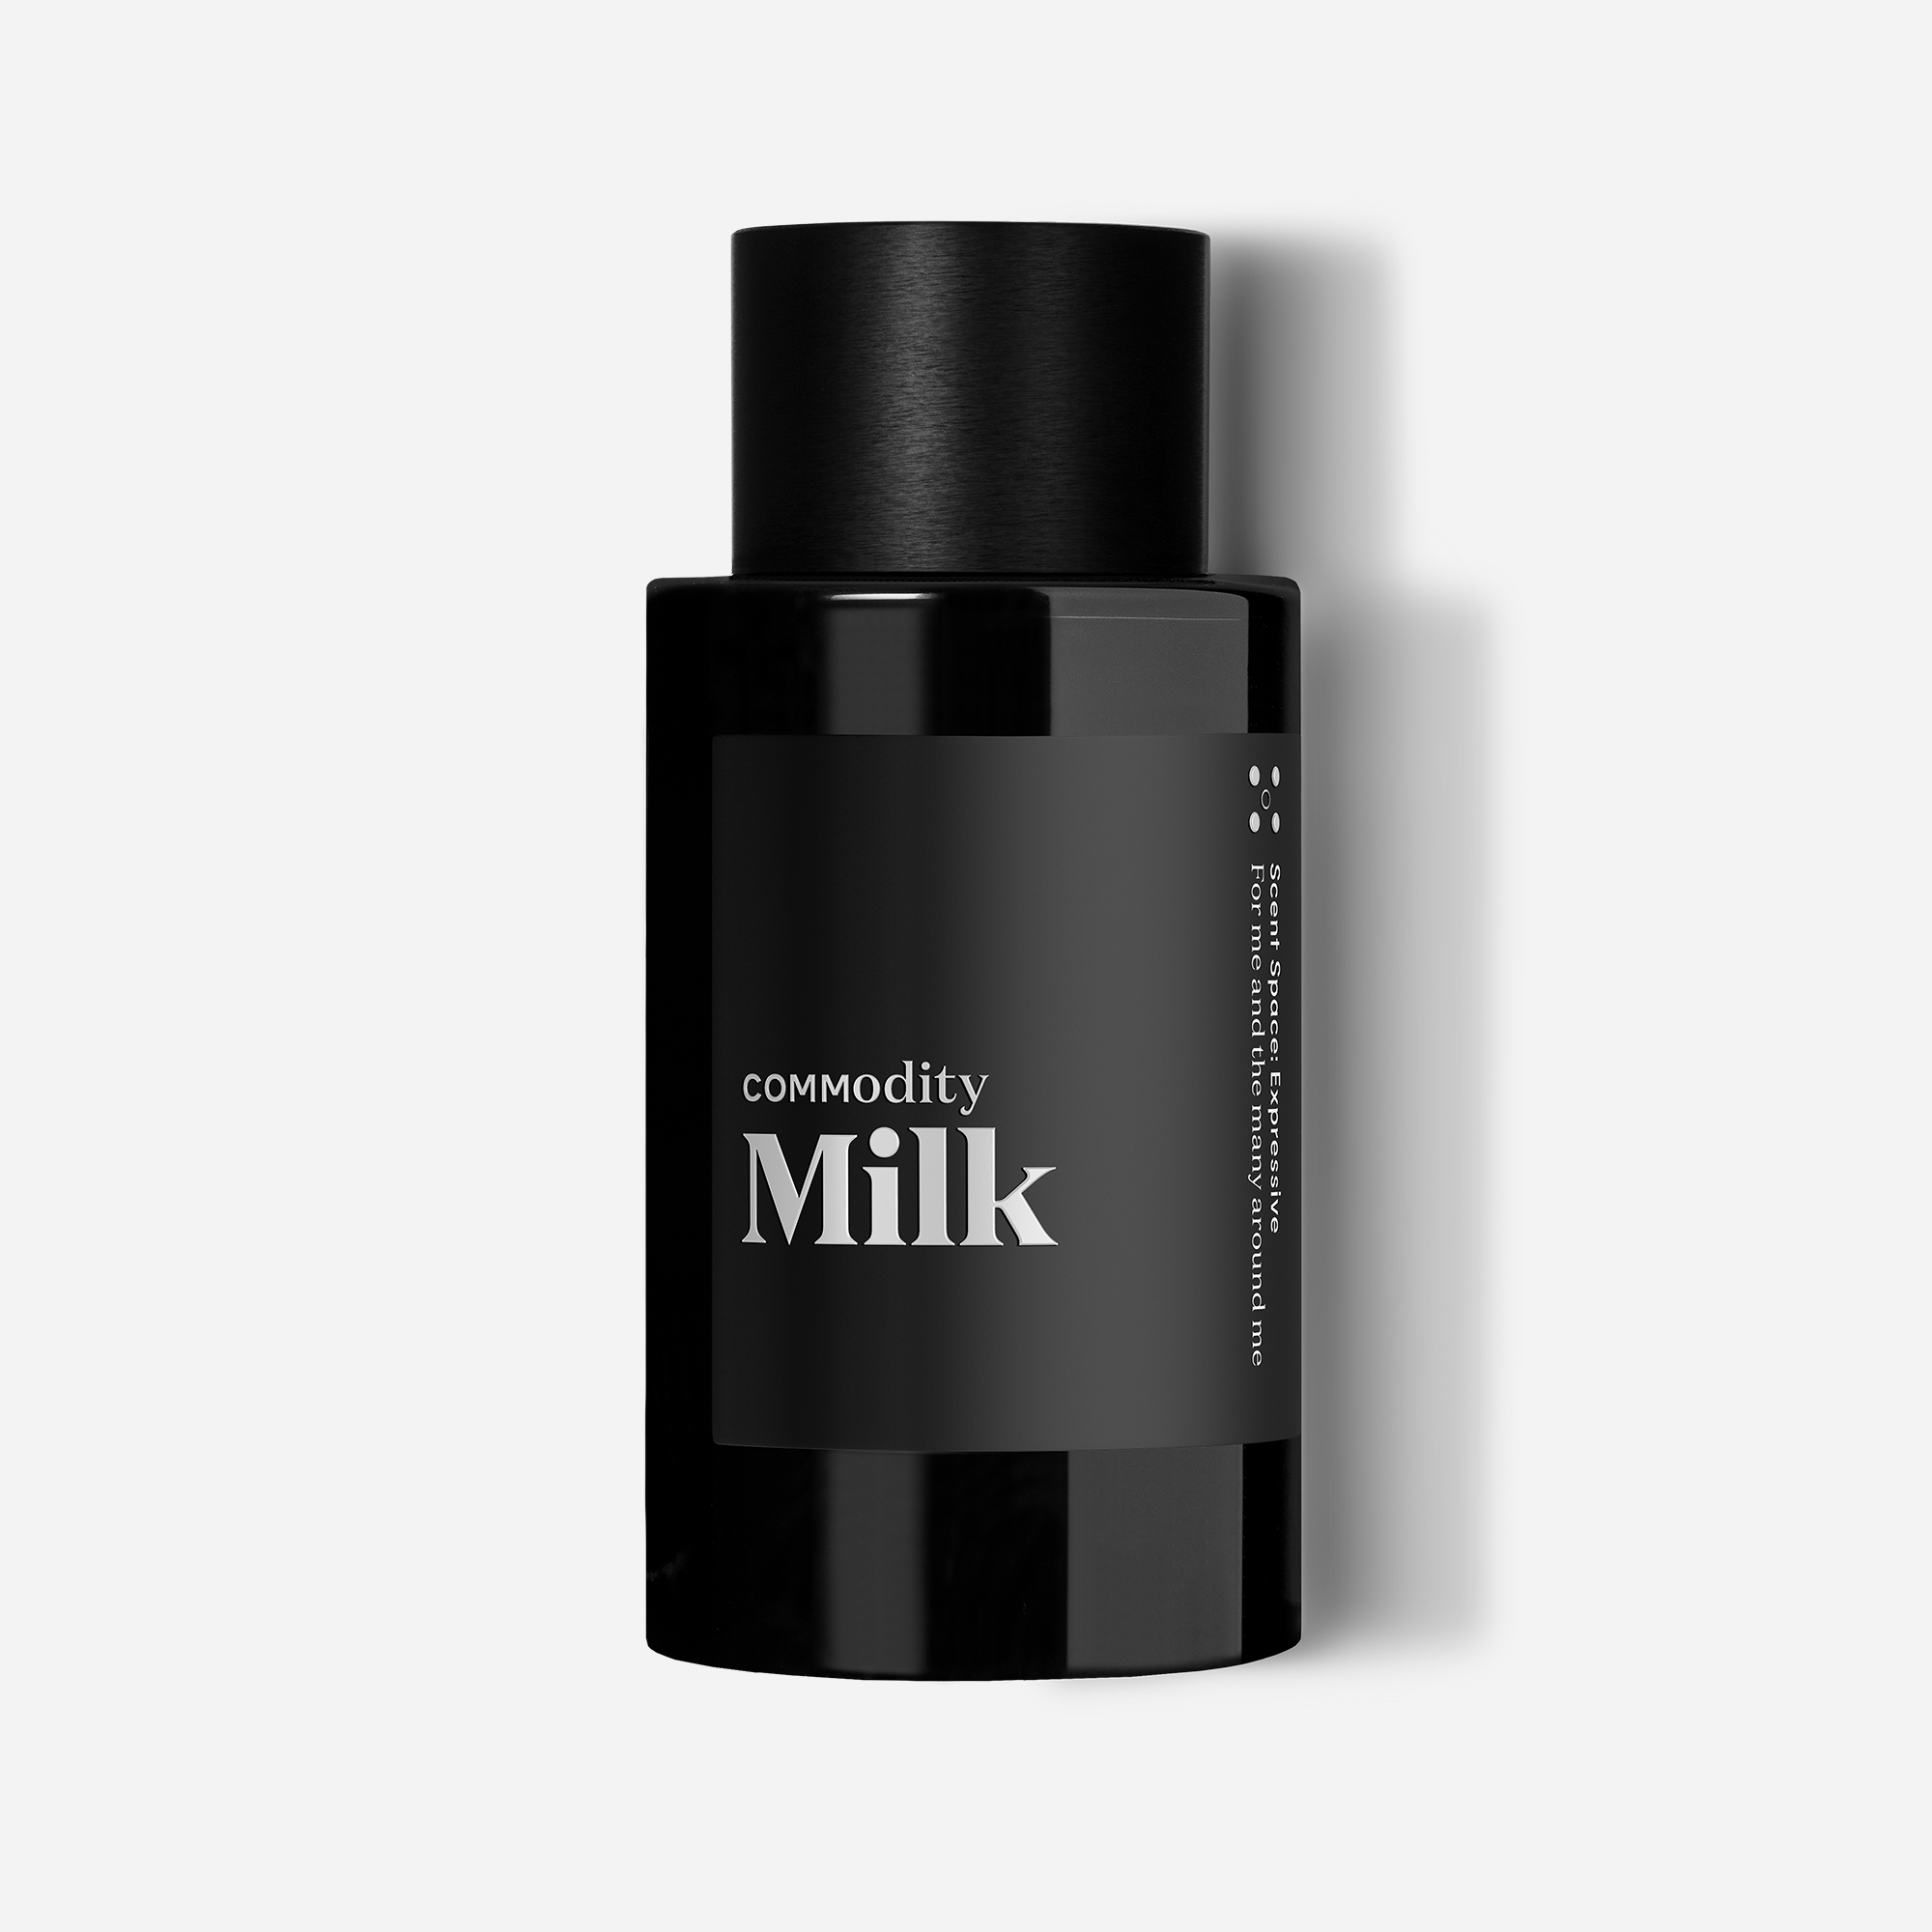 Milk – CommodityUS